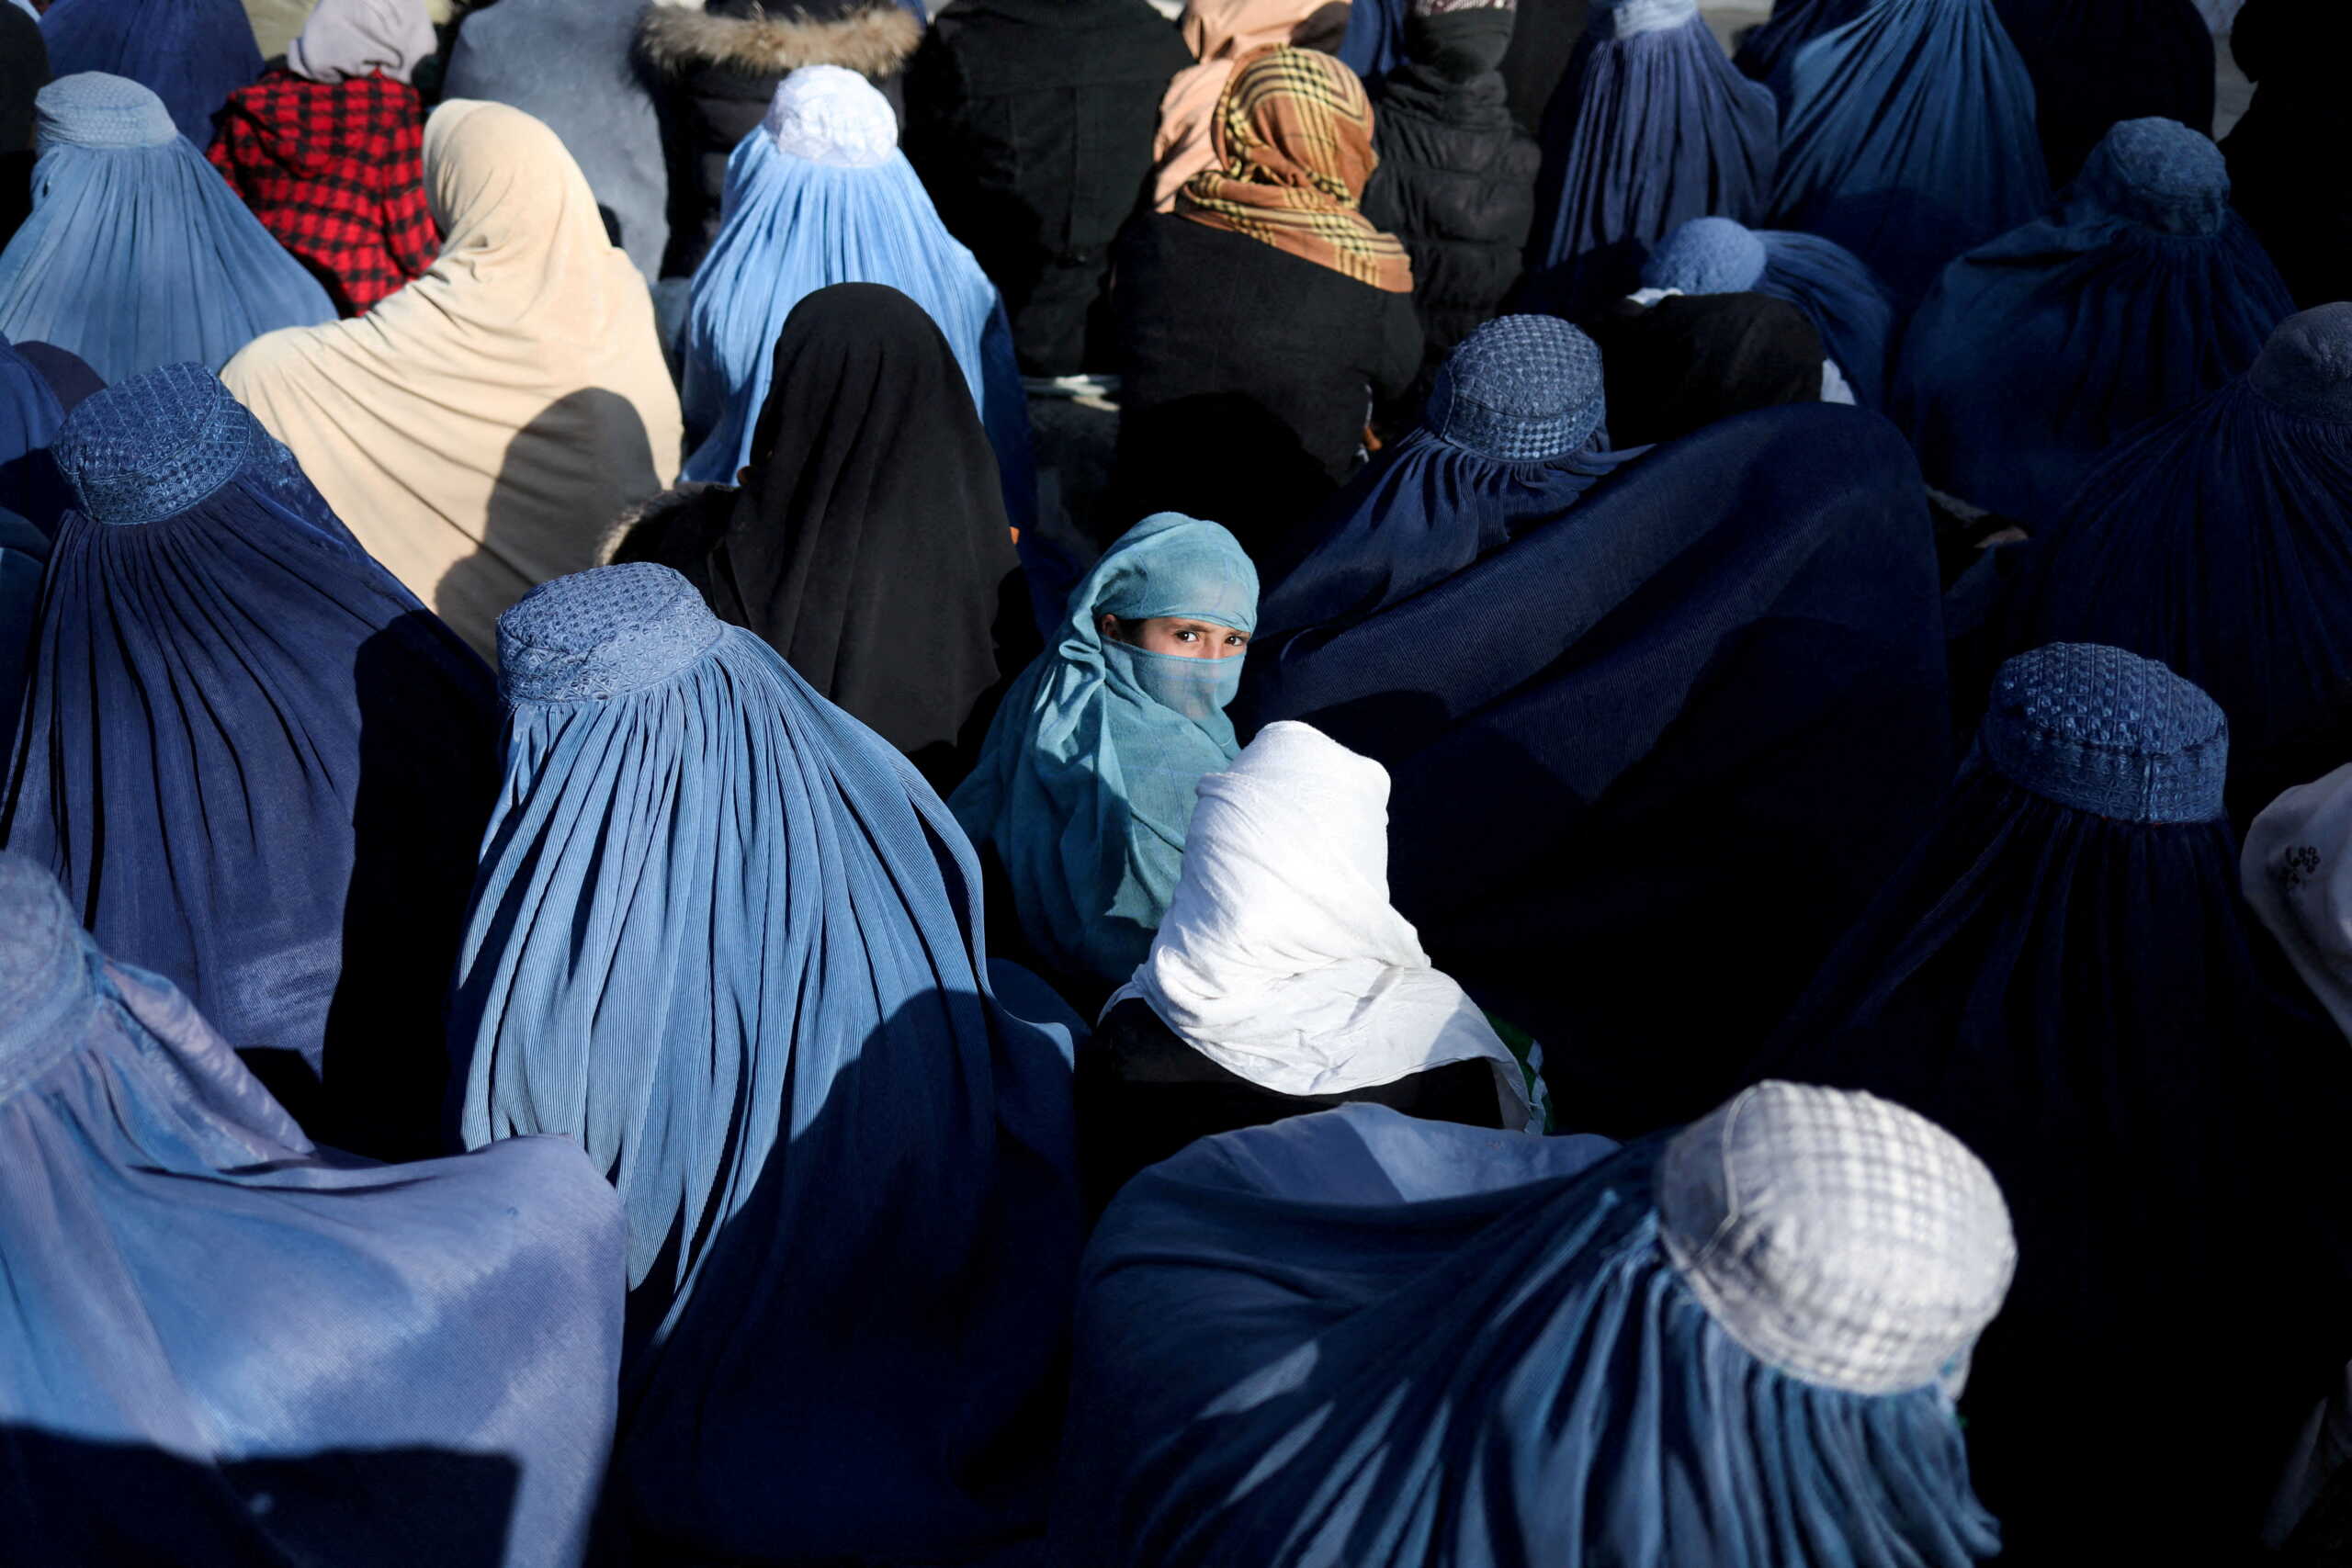 G7 σε Ταλιμπάν: Σταματήστε να περιορίζετε τα δικαιώματα των γυναικών